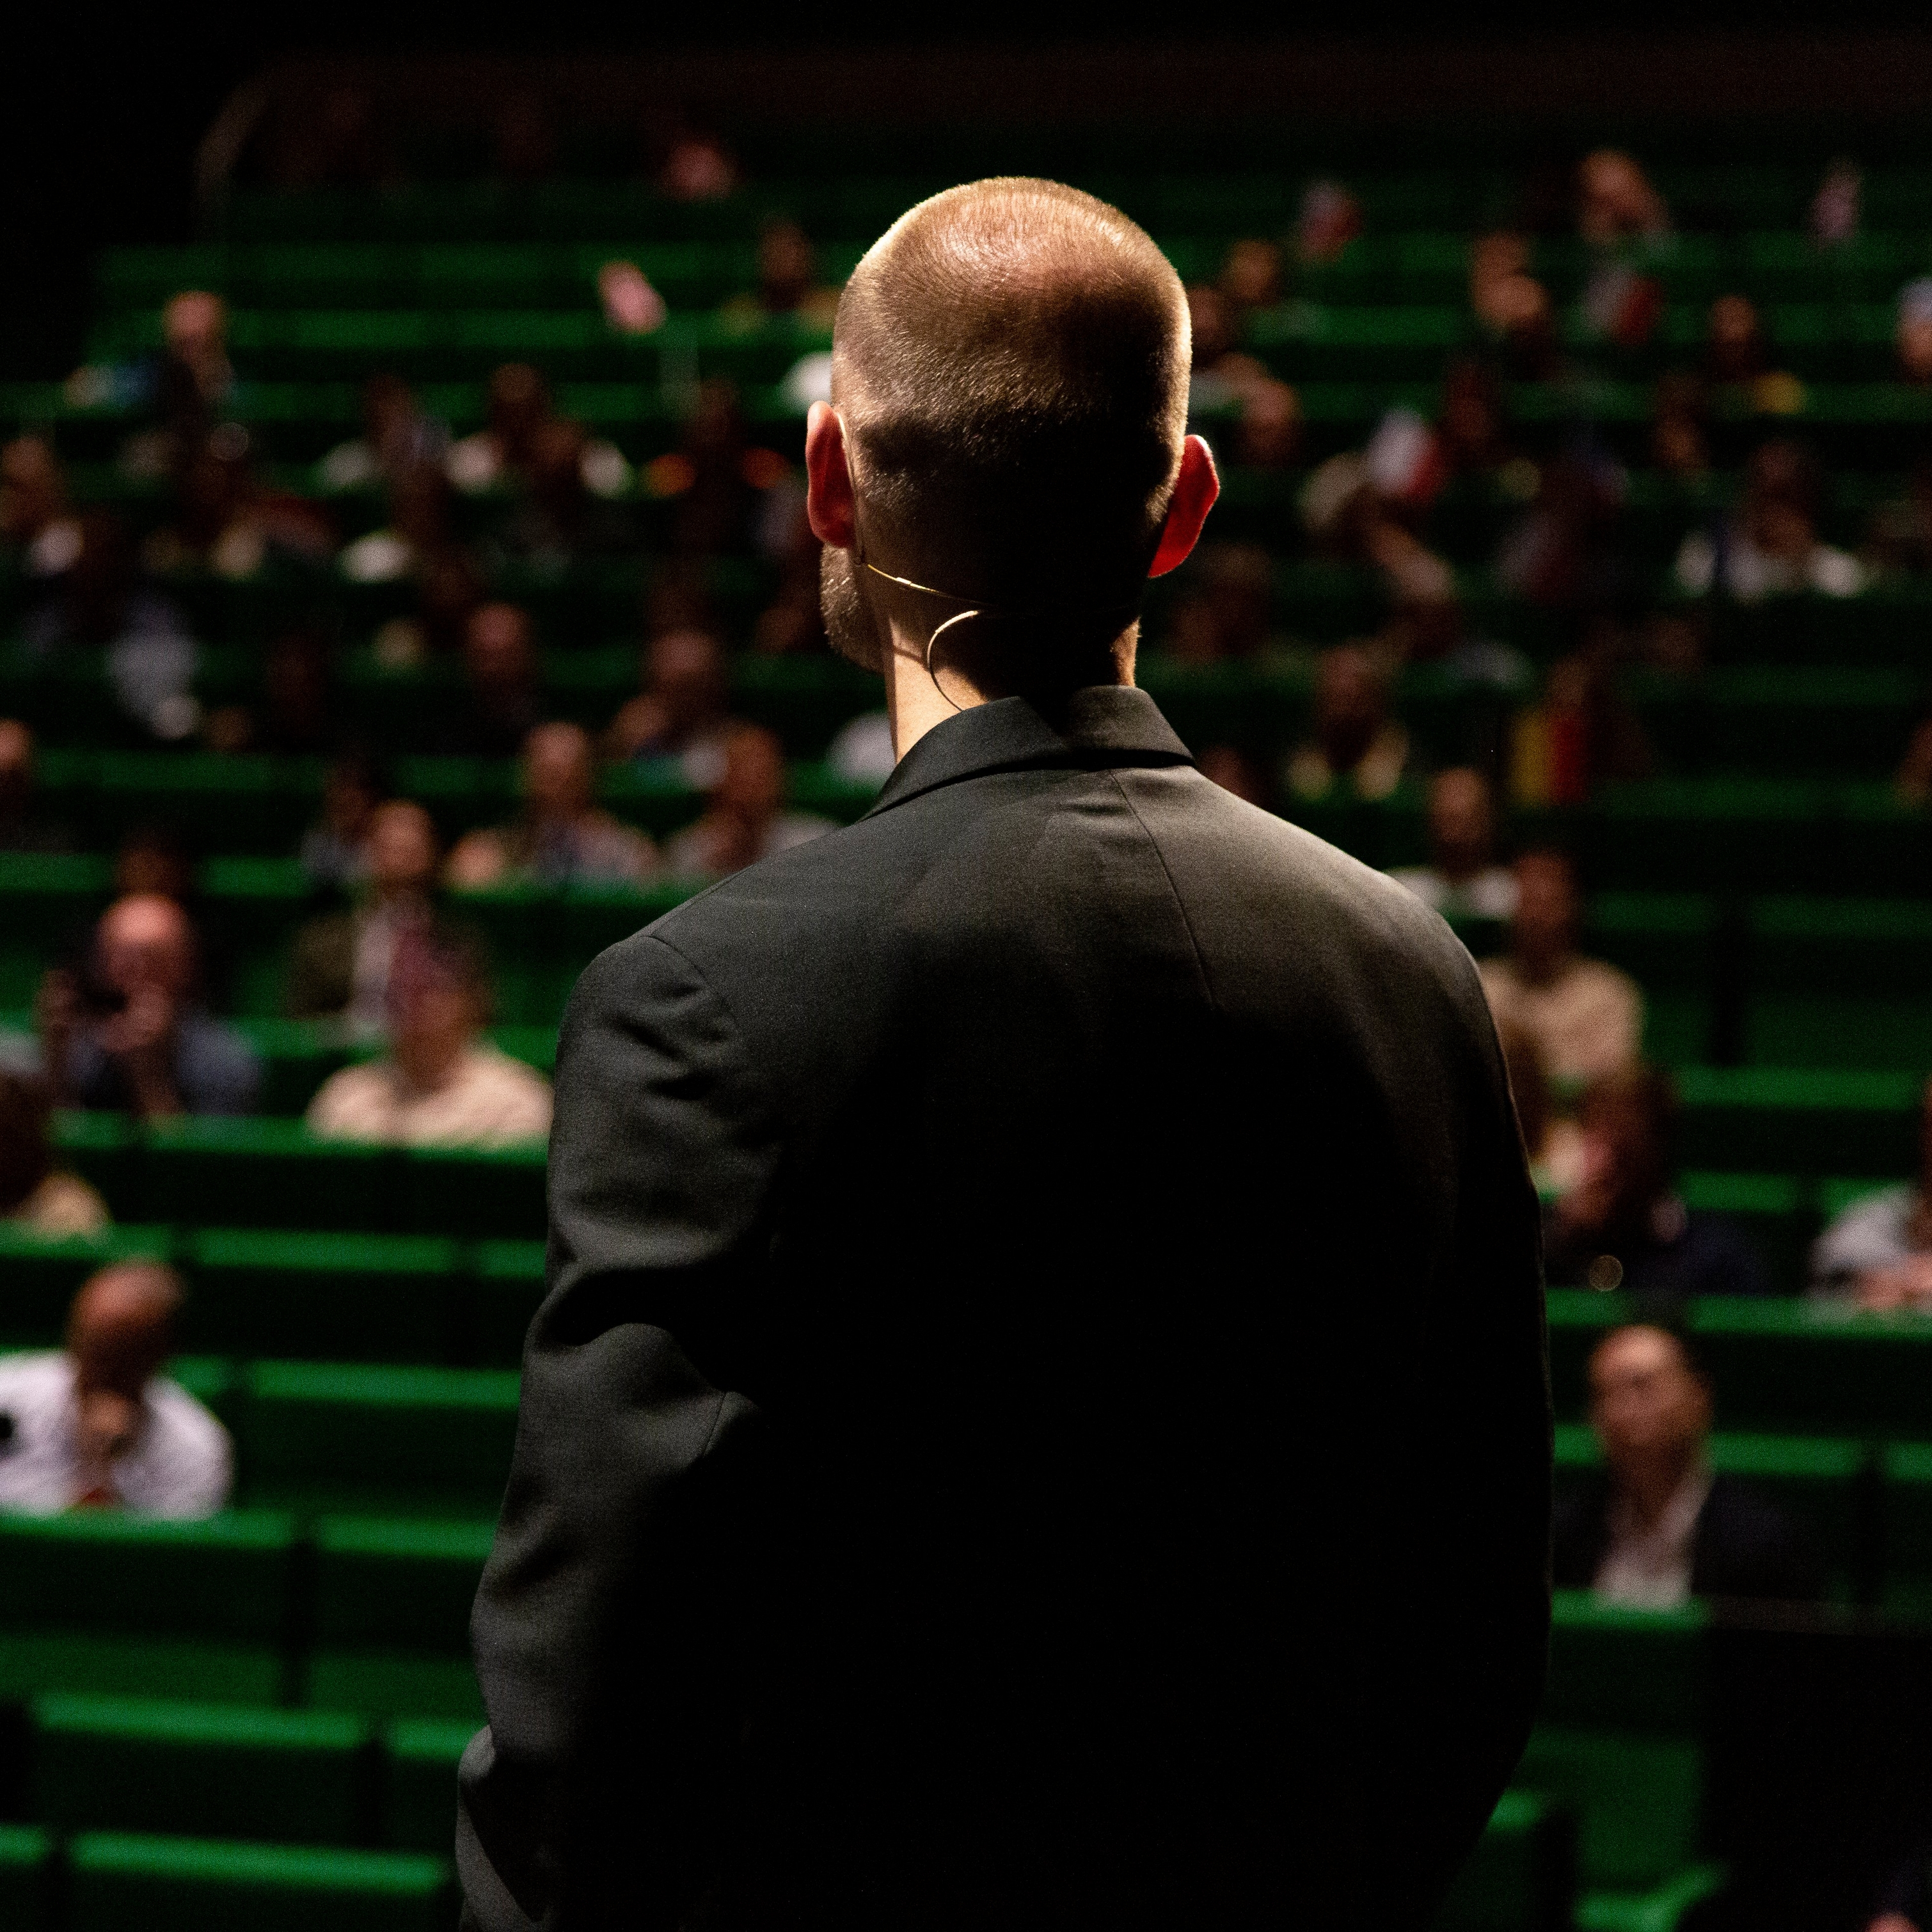 グリーンの椅子が並ぶ講堂で、黒いスーツを着た男性が聴衆に顔を向けている。